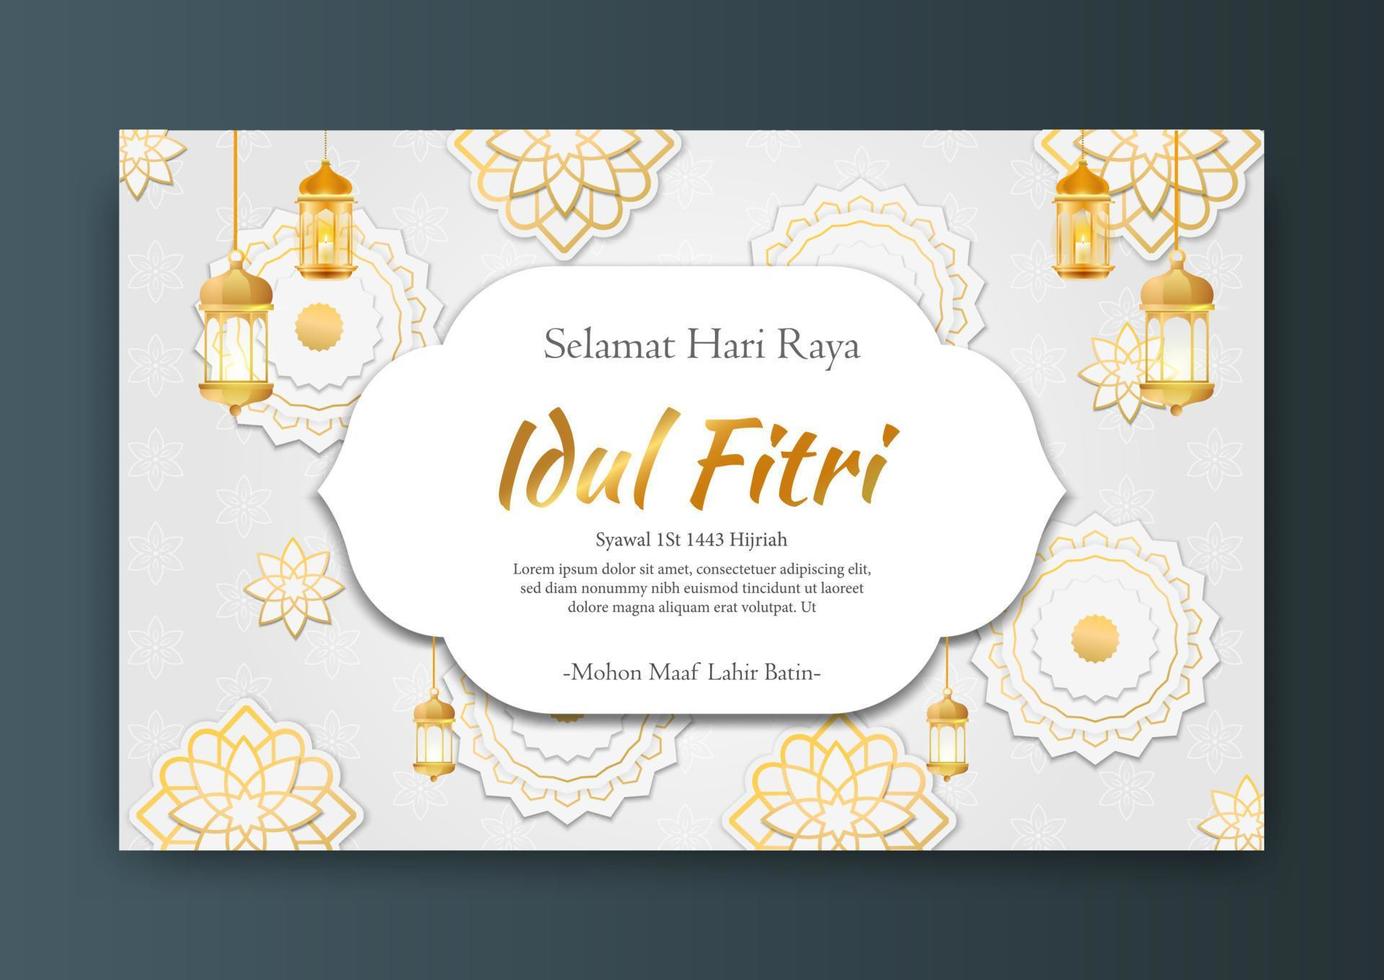 vektor banner för hälsningar från sociala medier för eid al fitr hari raya idul fitri muslimska helgdagar